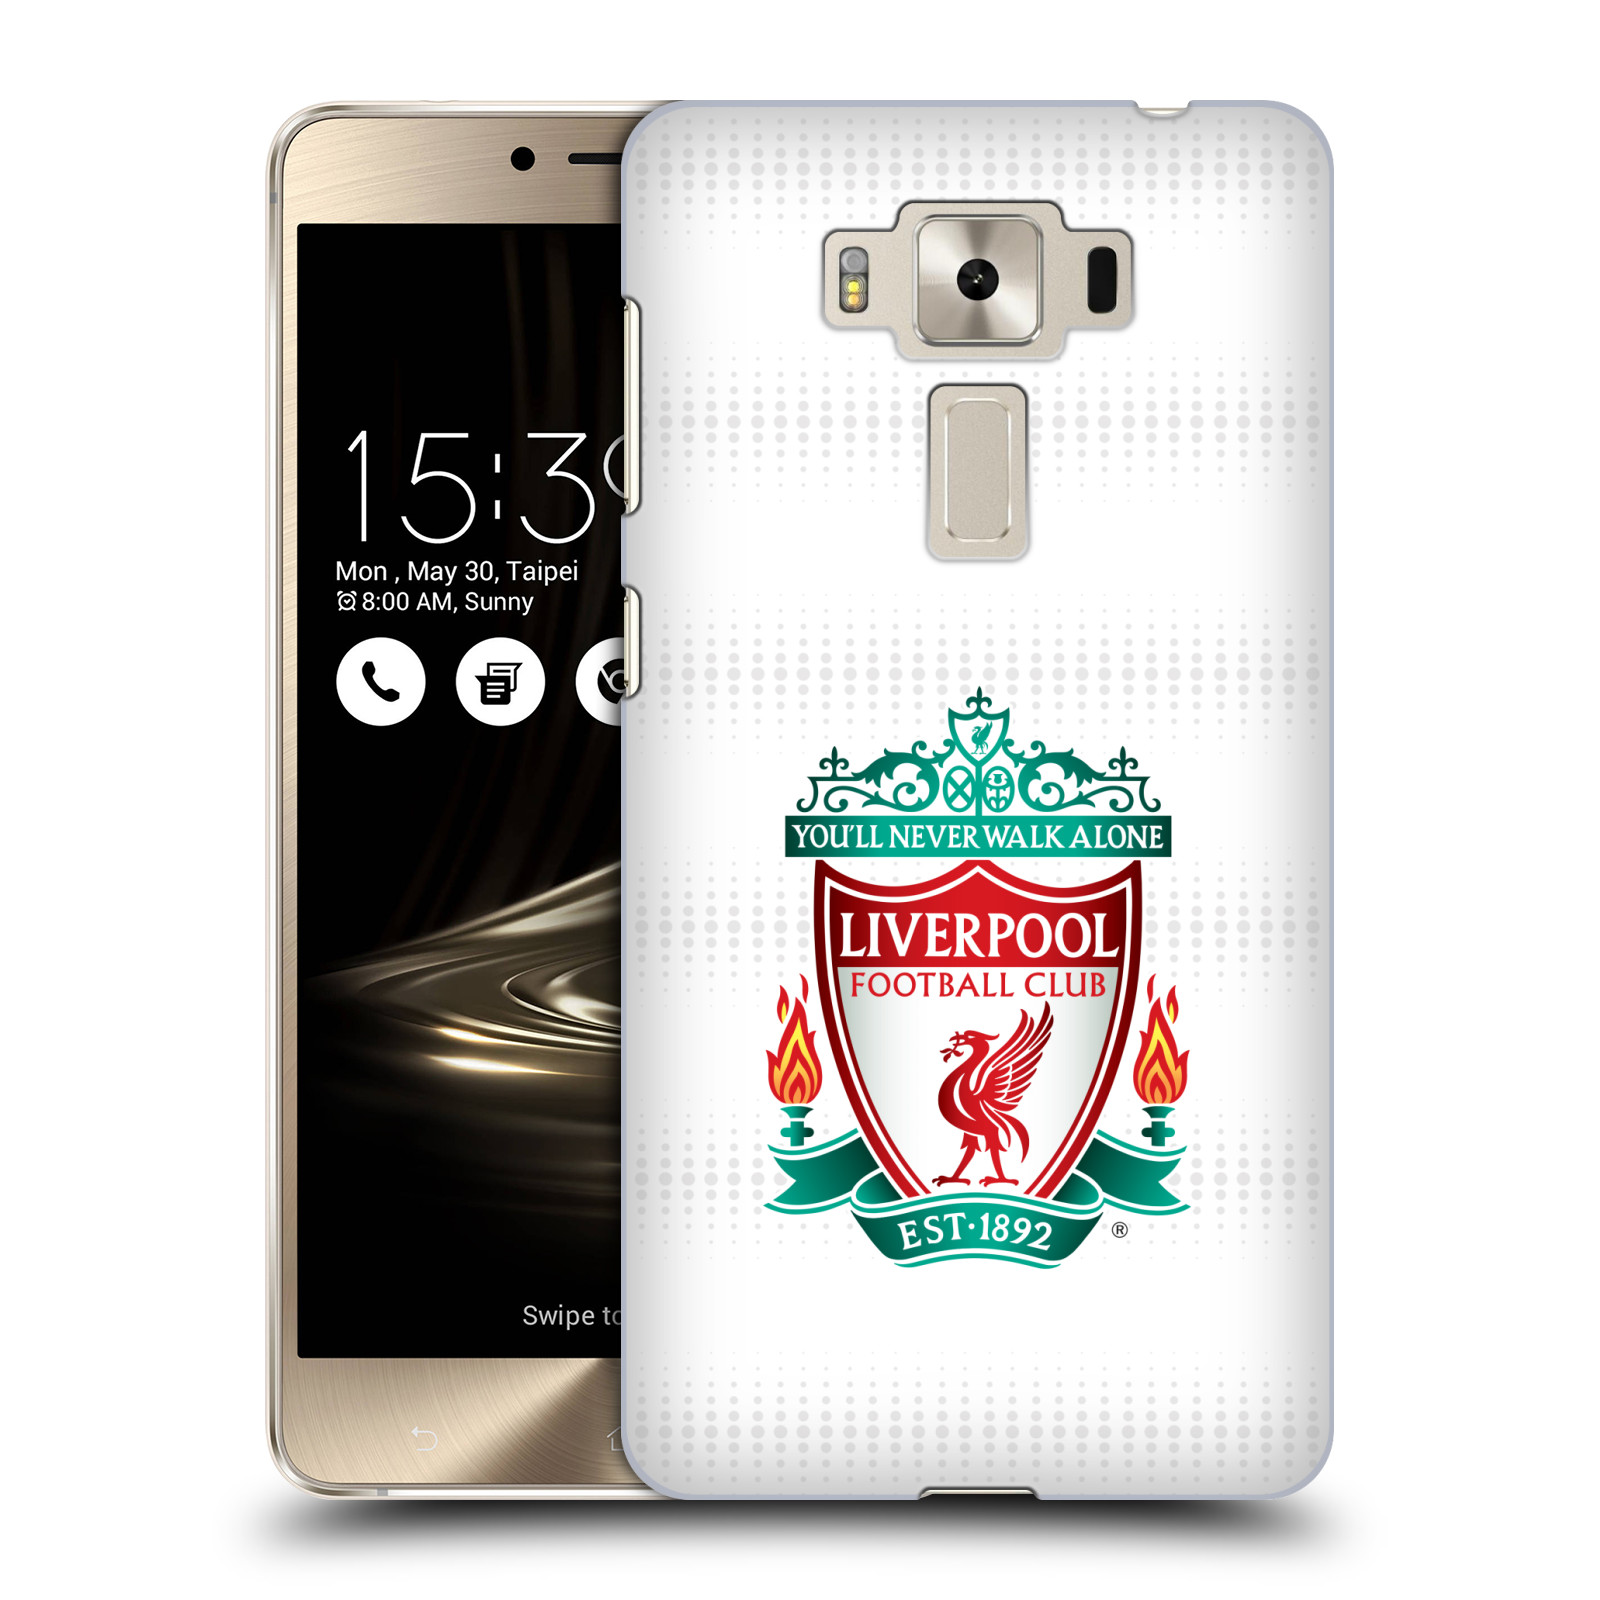 HEAD CASE plastový obal na mobil Asus Zenfone 3 DELUXE ZS550KL Fotbalový klub Liverpool barevný znak bílé pozadí s tečkami